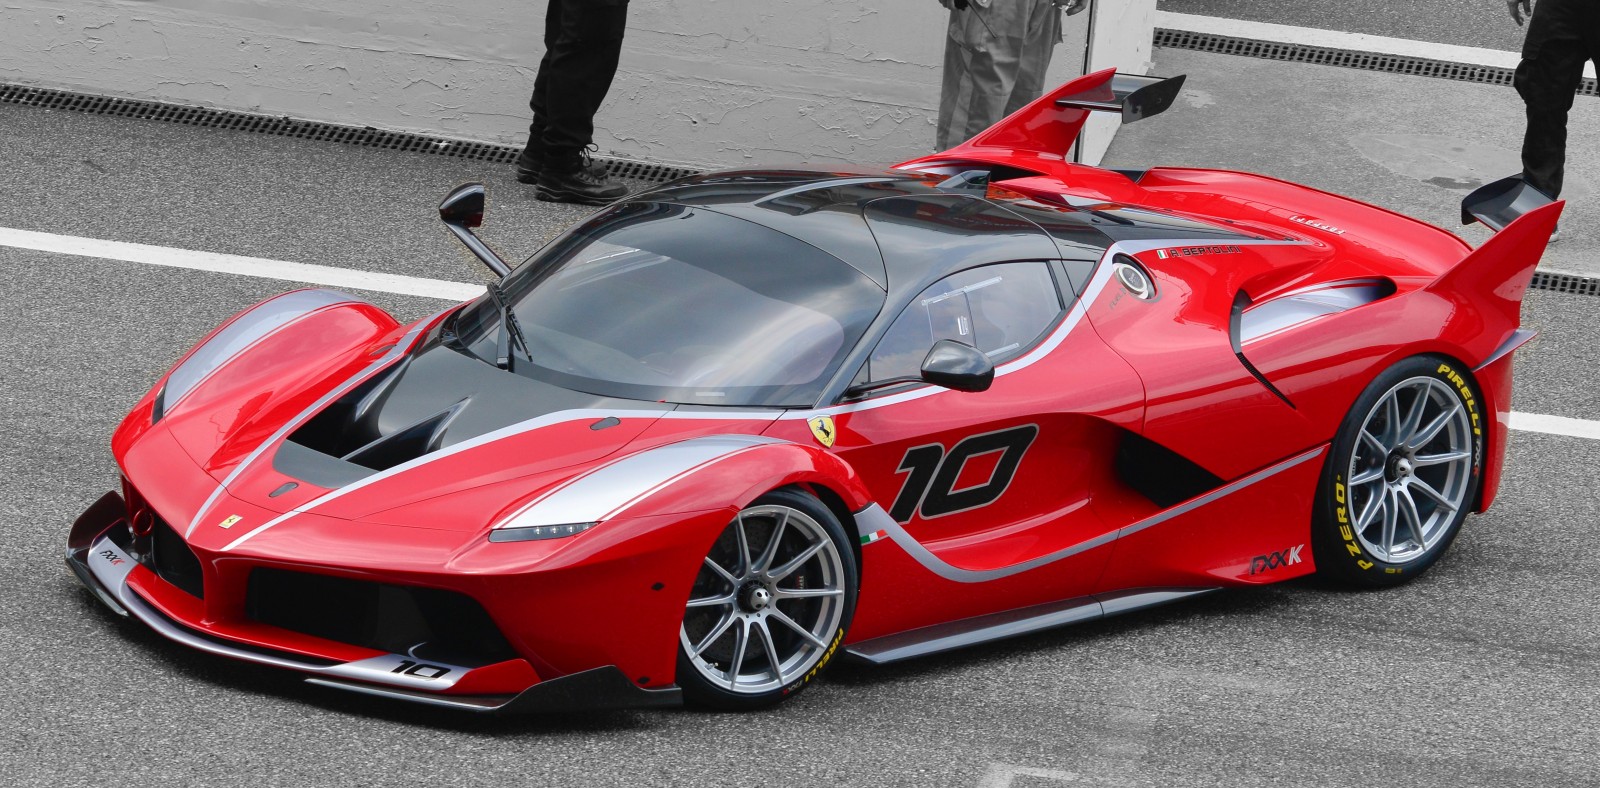 Une Ferrari FXX K "Evoluzione" en route d'après Top Gear